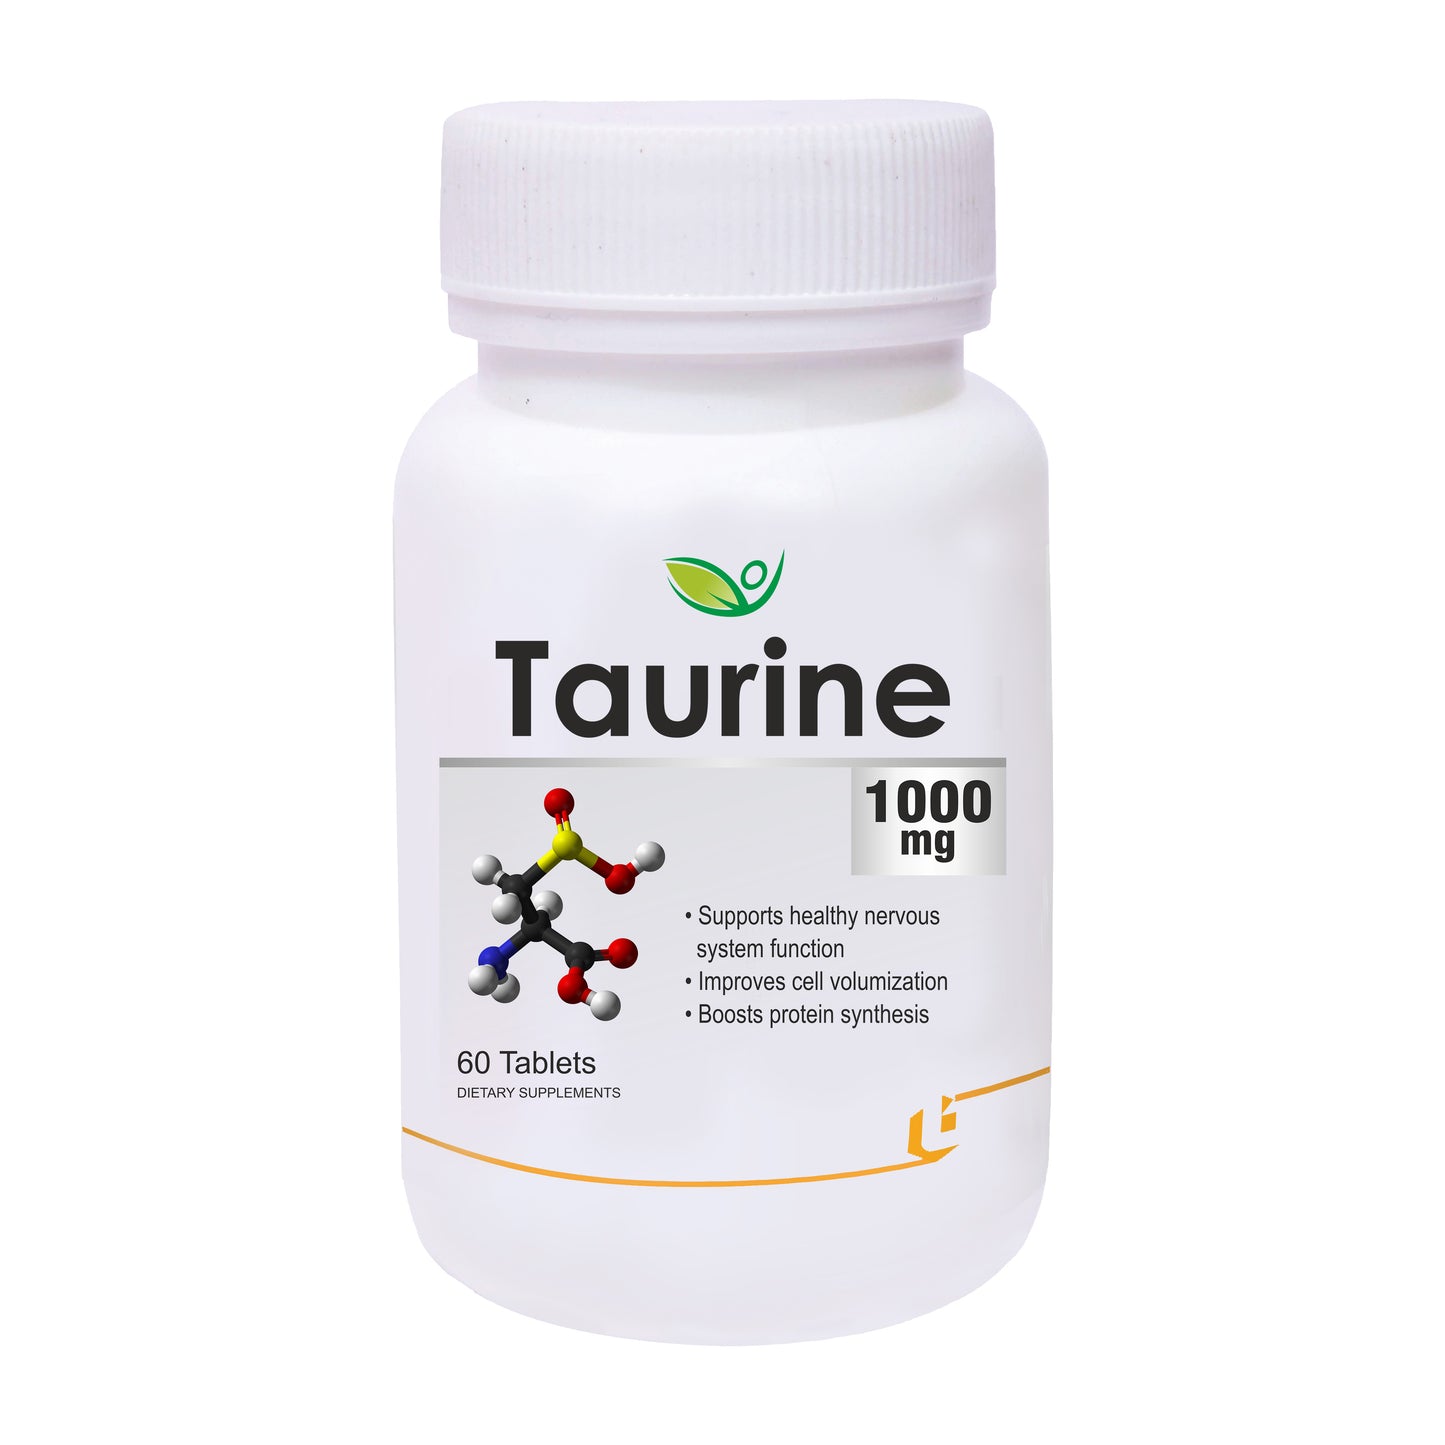 Biotrex Taurine 1000mg- 60 Tablets